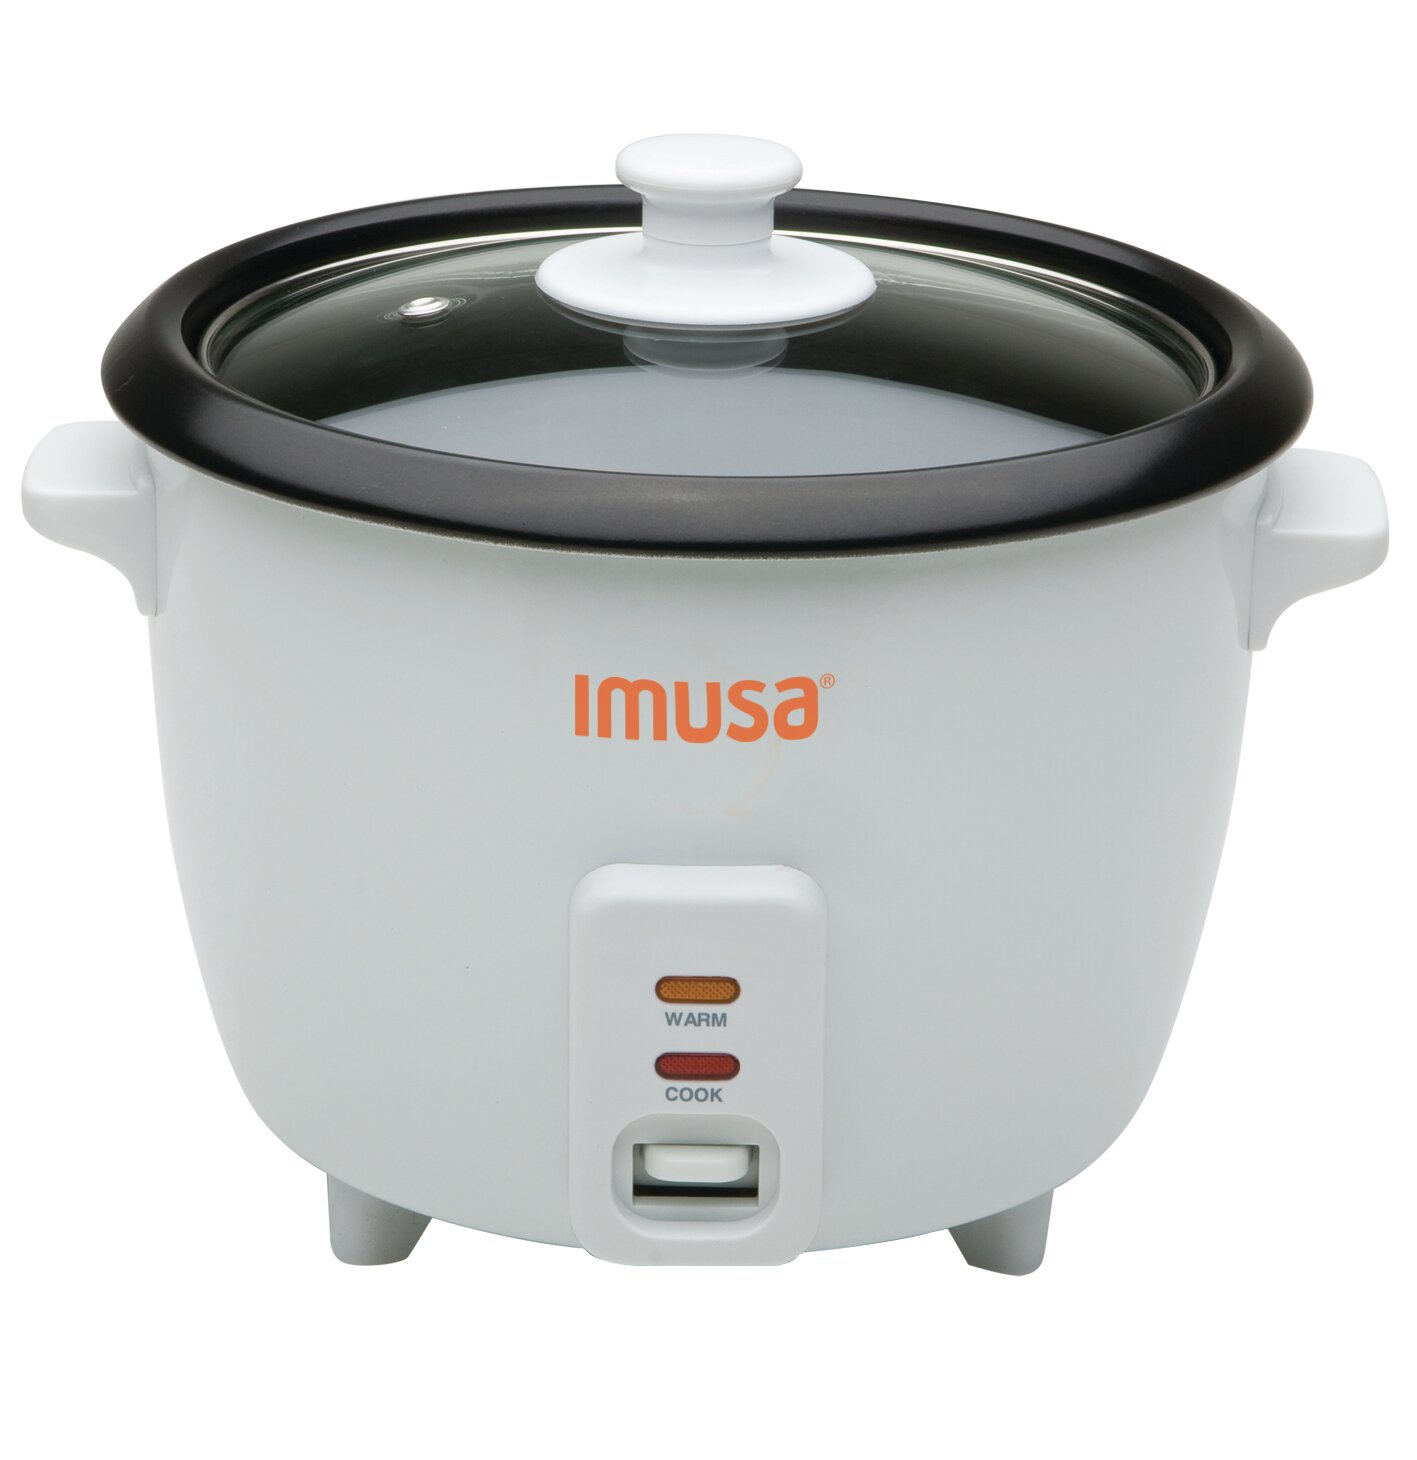 https://assets.wfcdn.com/im/28834526/compr-r85/1309/13091509/imusa-rice-cooker.jpg